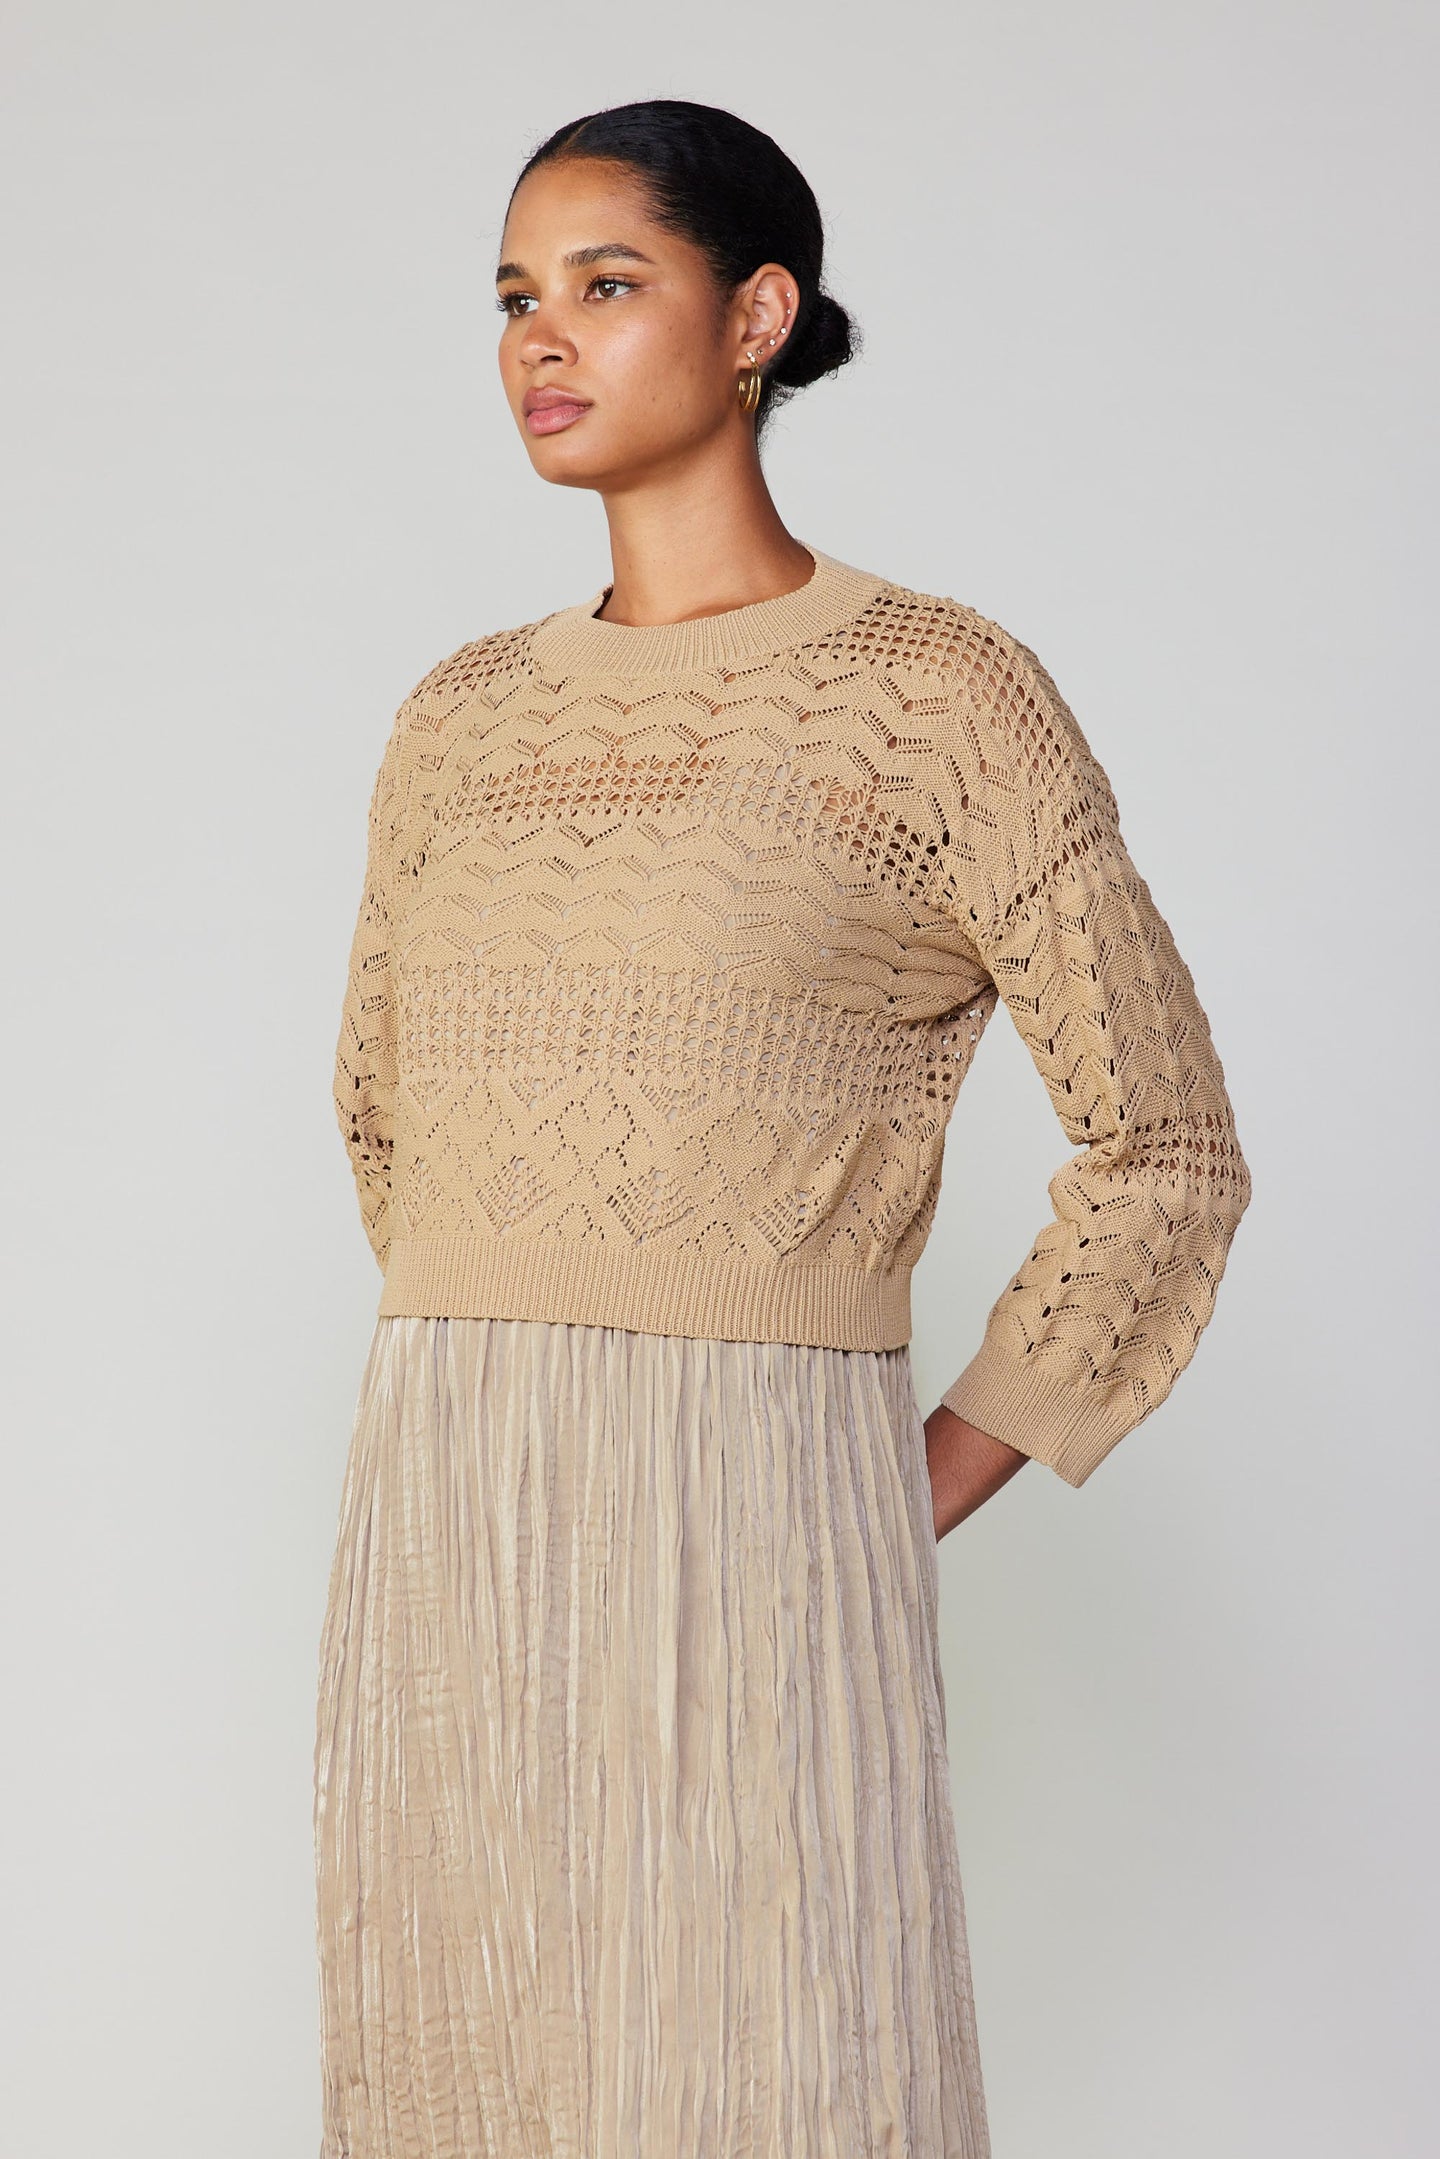 Two Piece Sweater Dress